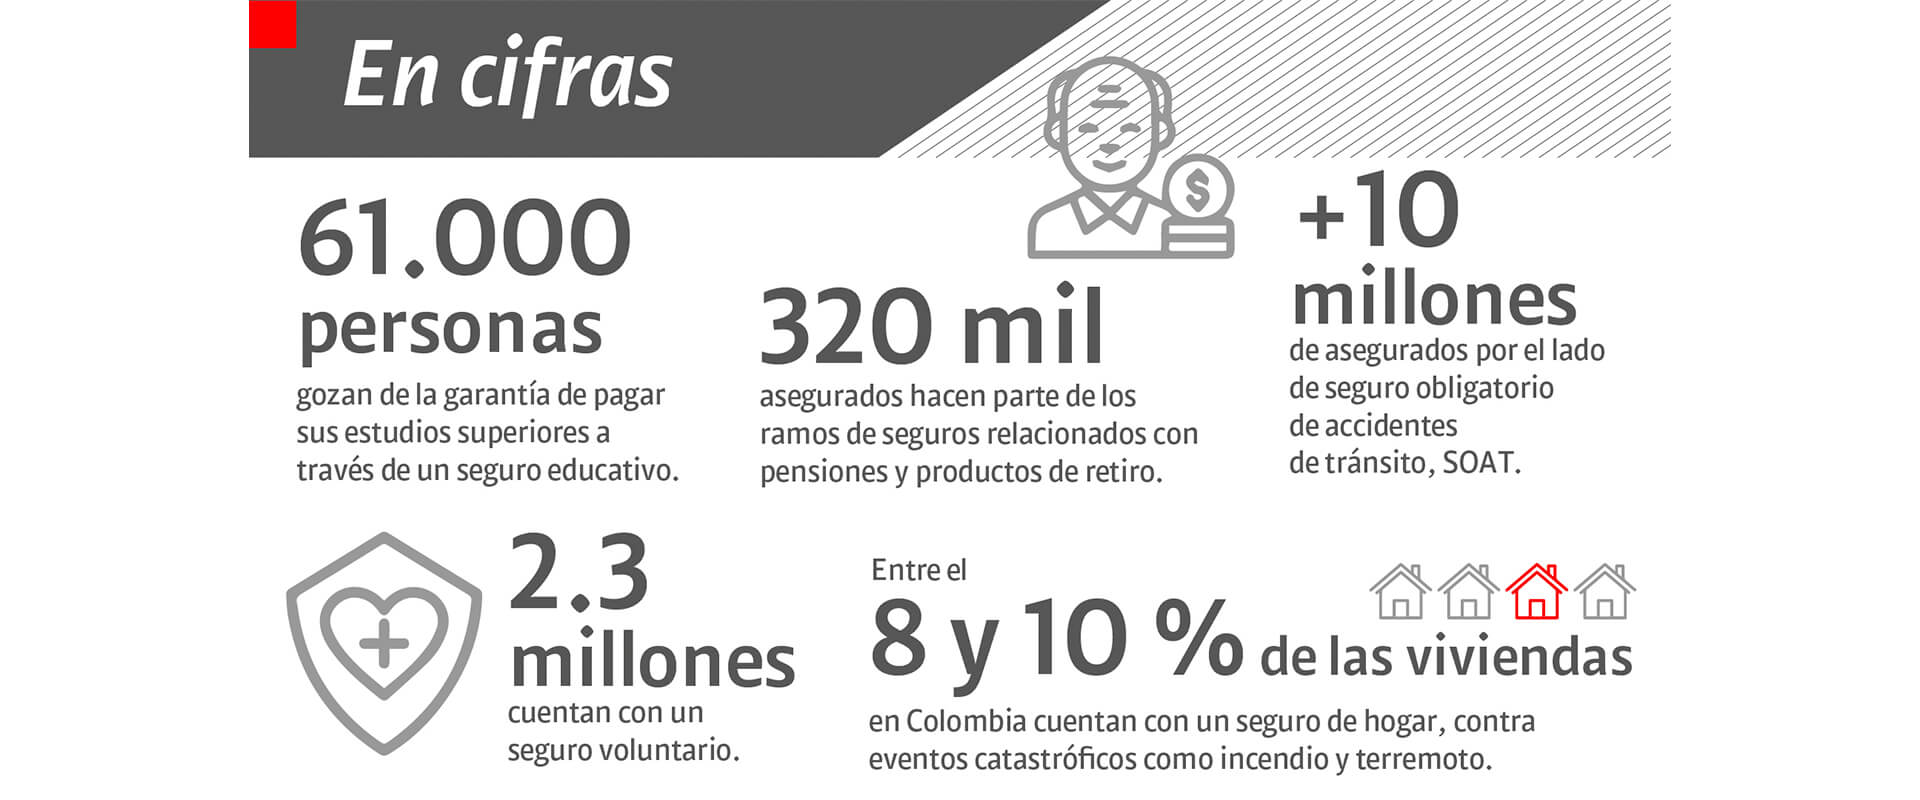 Mercado seguro: perspectivas del sector asegurador en Colombia